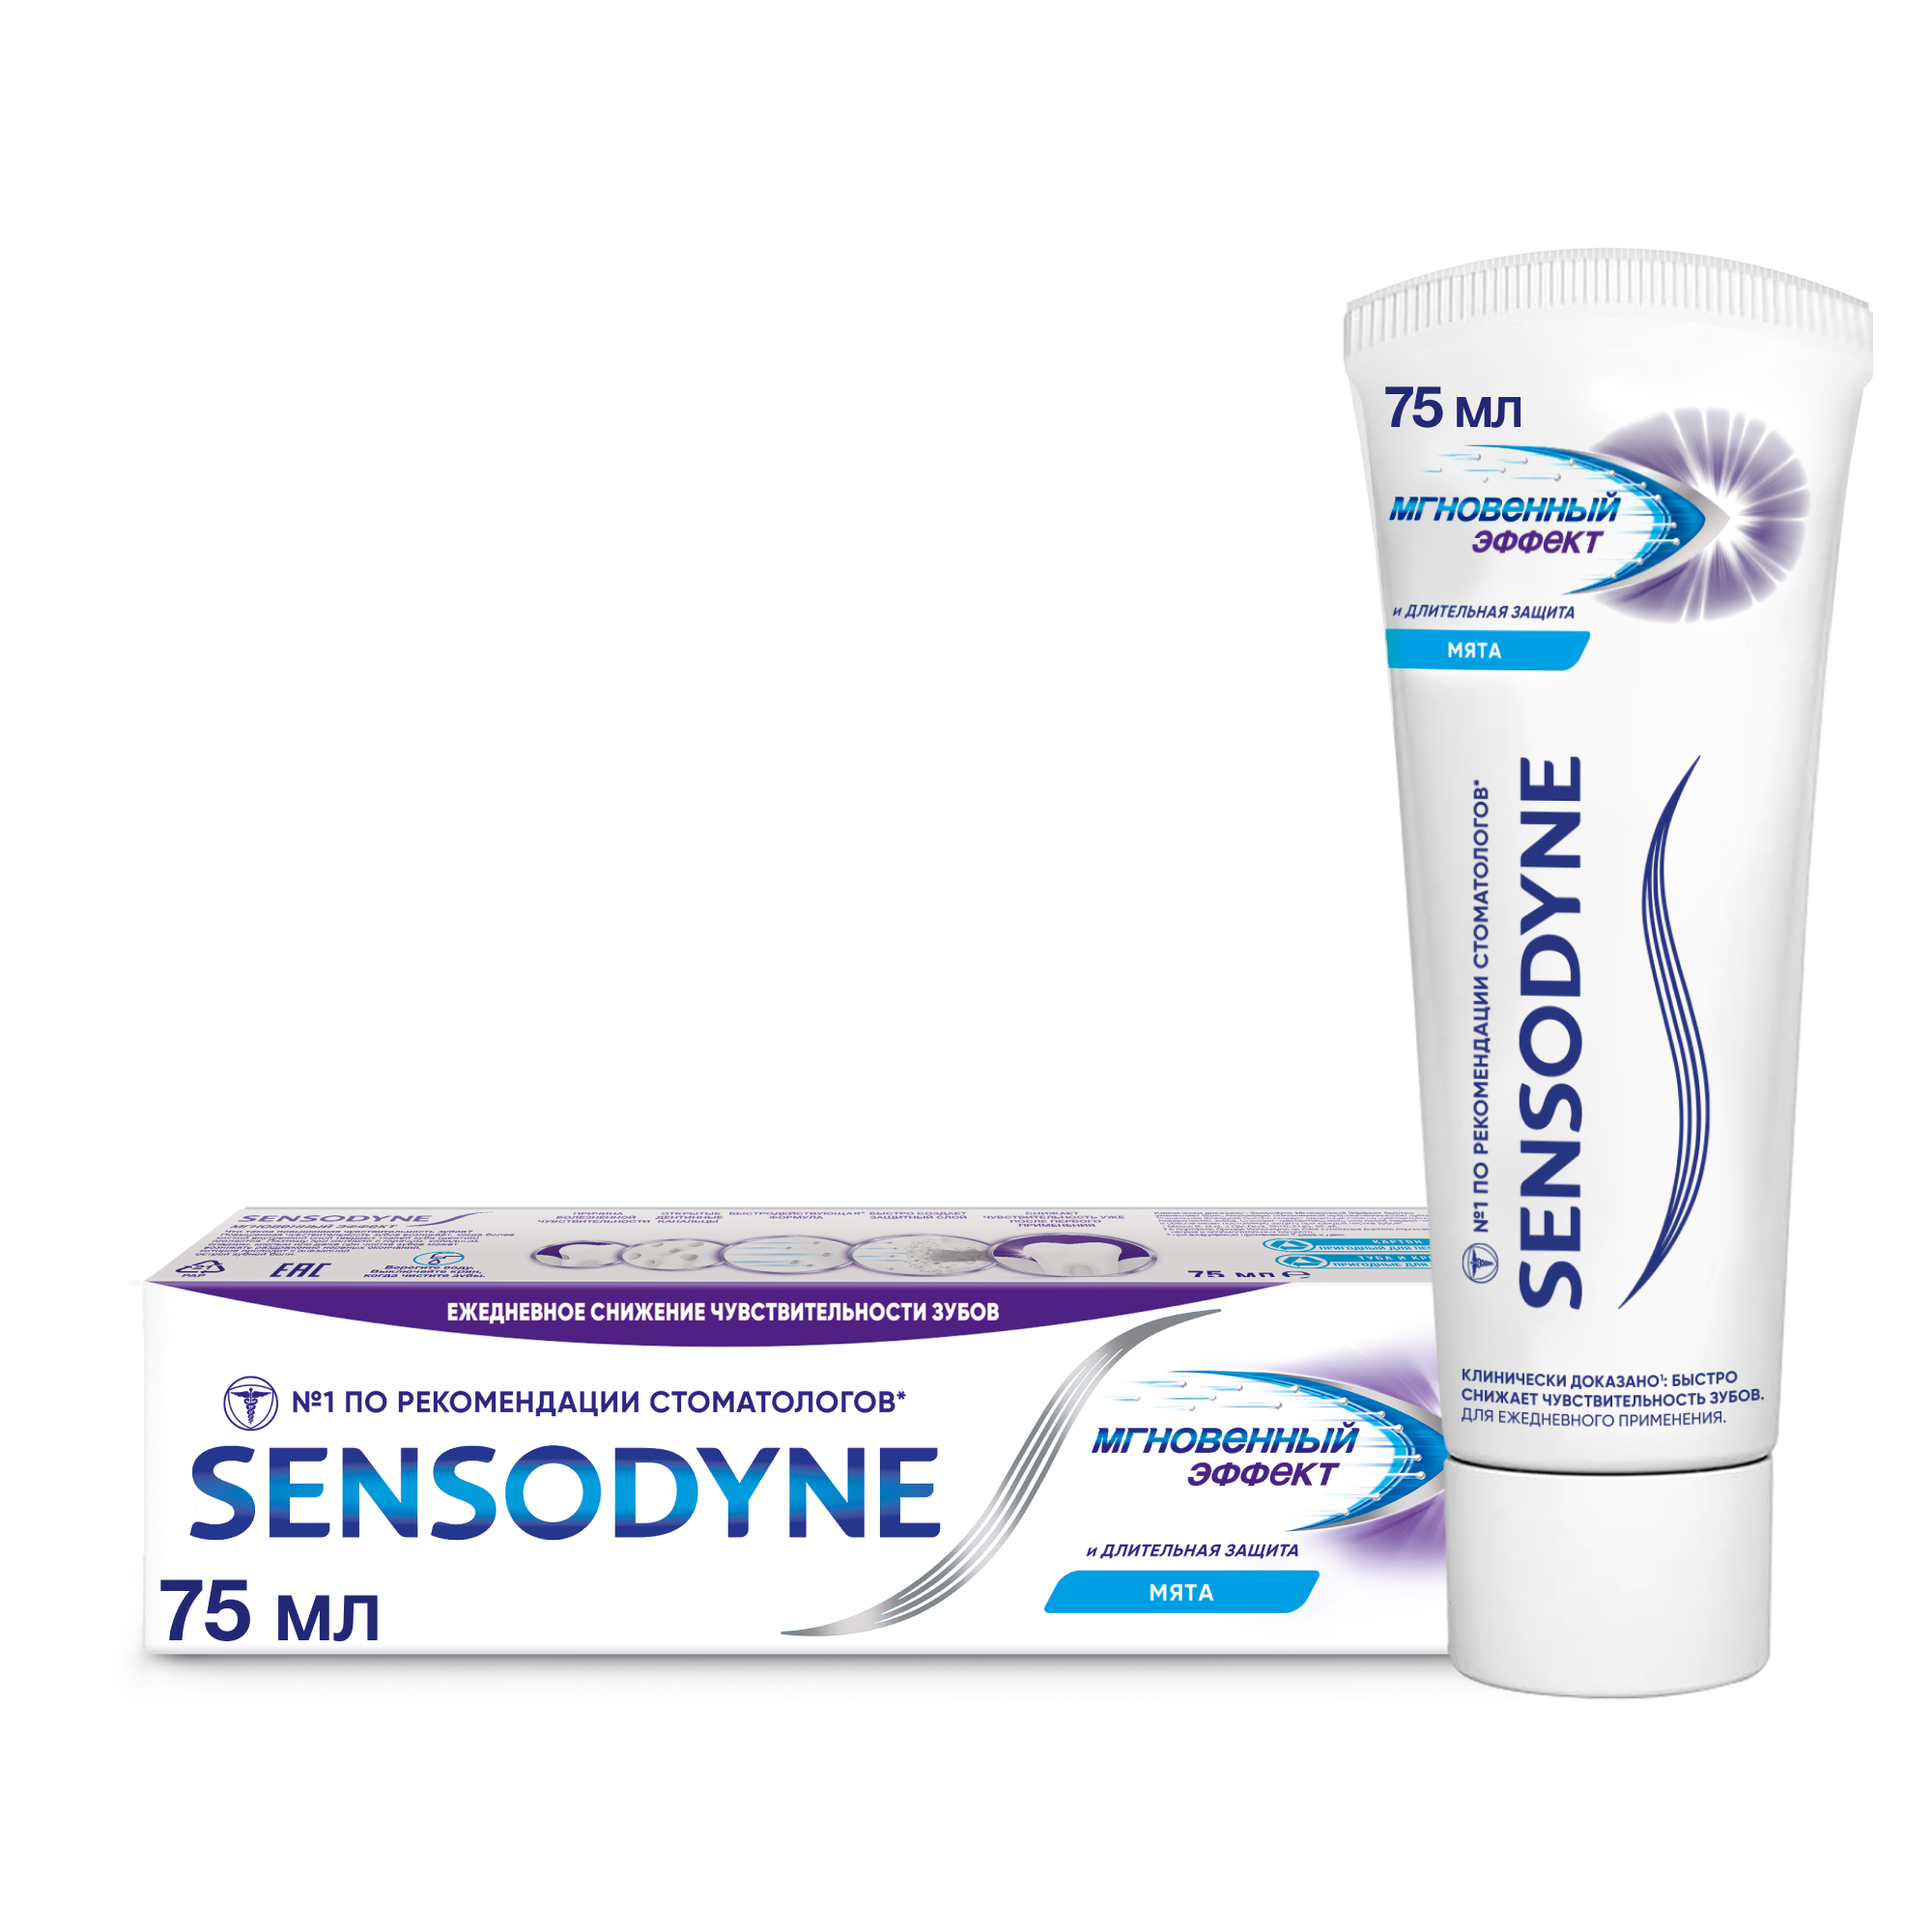 Зубная паста Sensodyne Мгновенный Эффект для чувствительных зубов с фтором, 75 мл зубная паста sensodyne мгновенный эффект длительная защита 75 мл